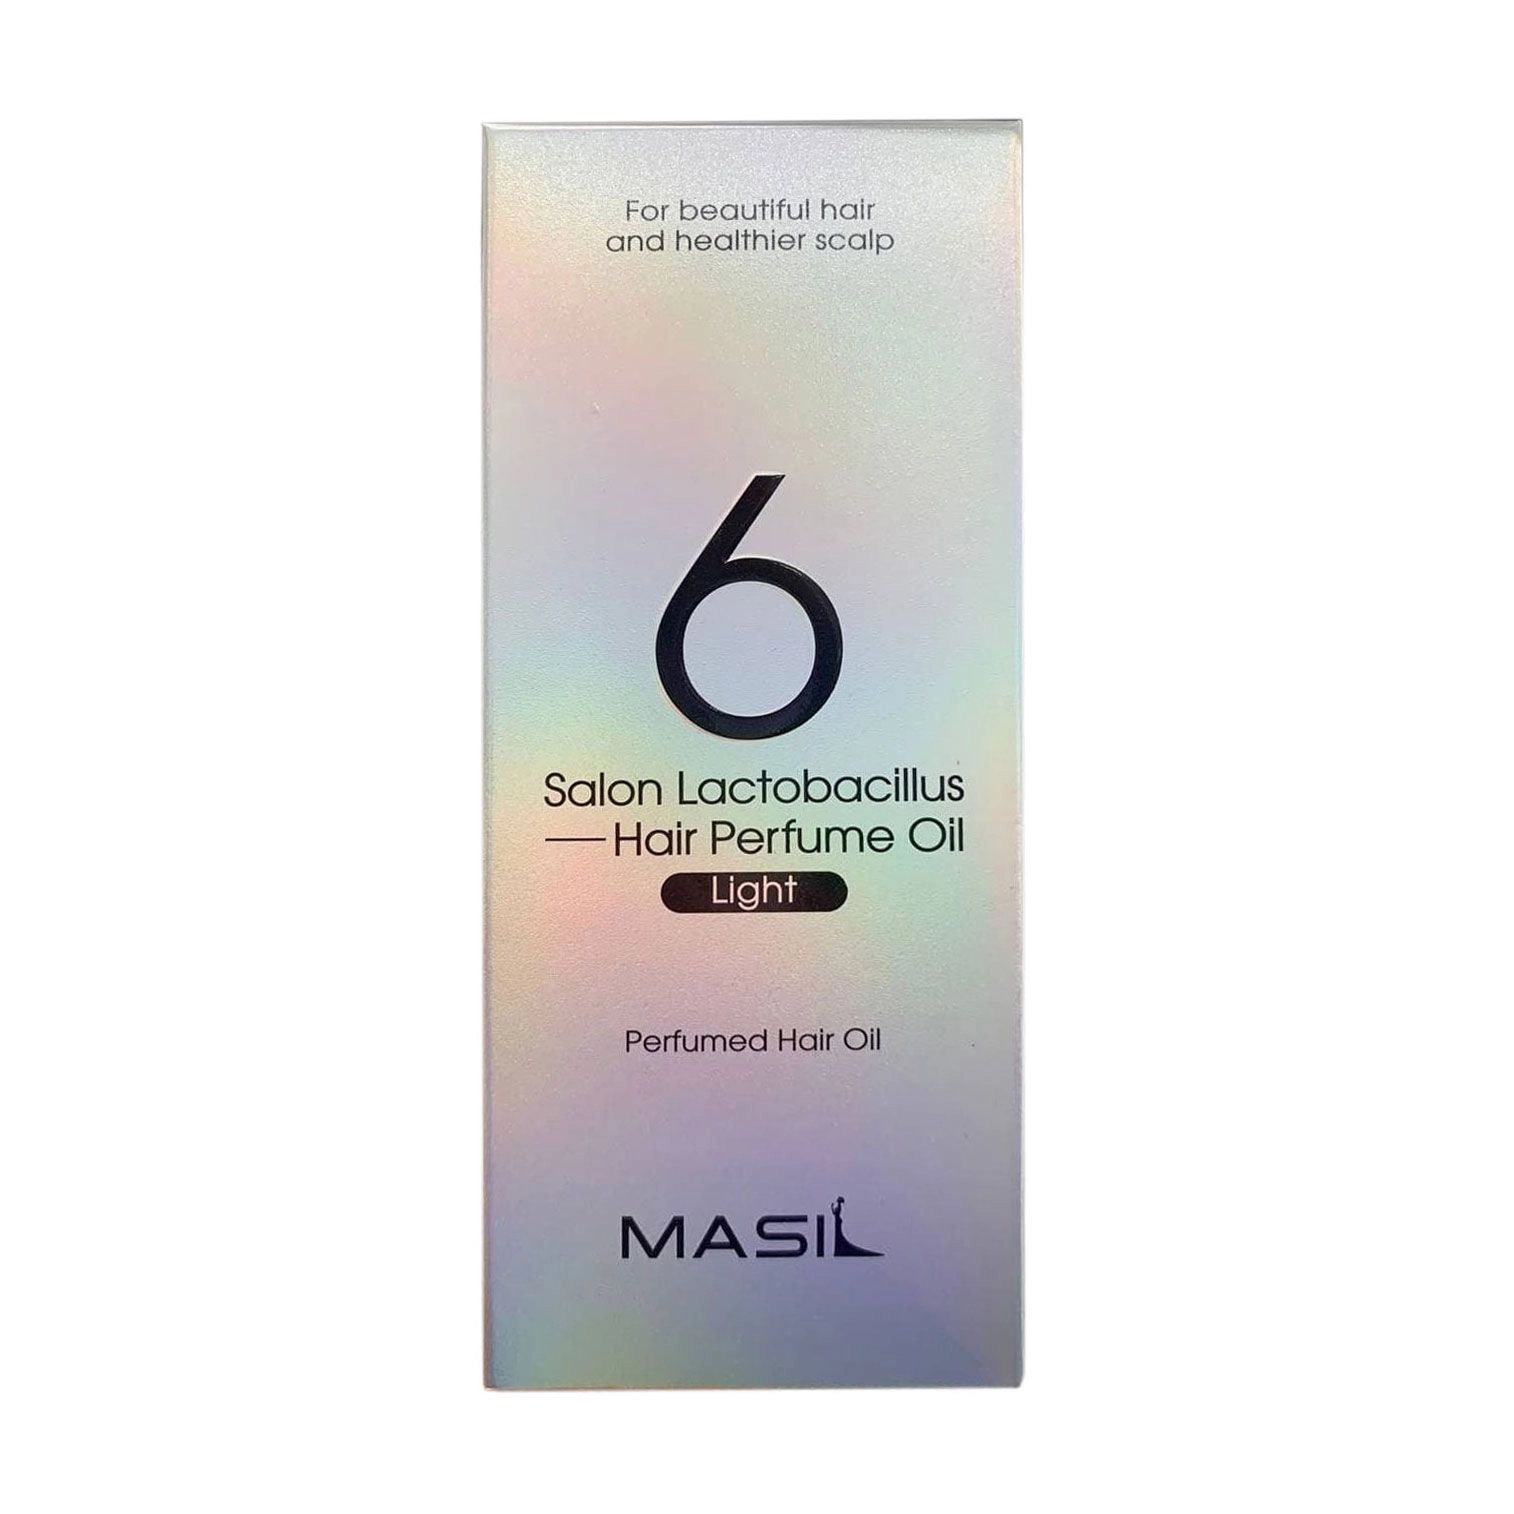 Легкое парфюмированное масло для волос с лактобактериями для ежедневного использования - Masil 6 Salon Lactobacillus Light Perfumed Hair Oil, 66 мл - фото N2